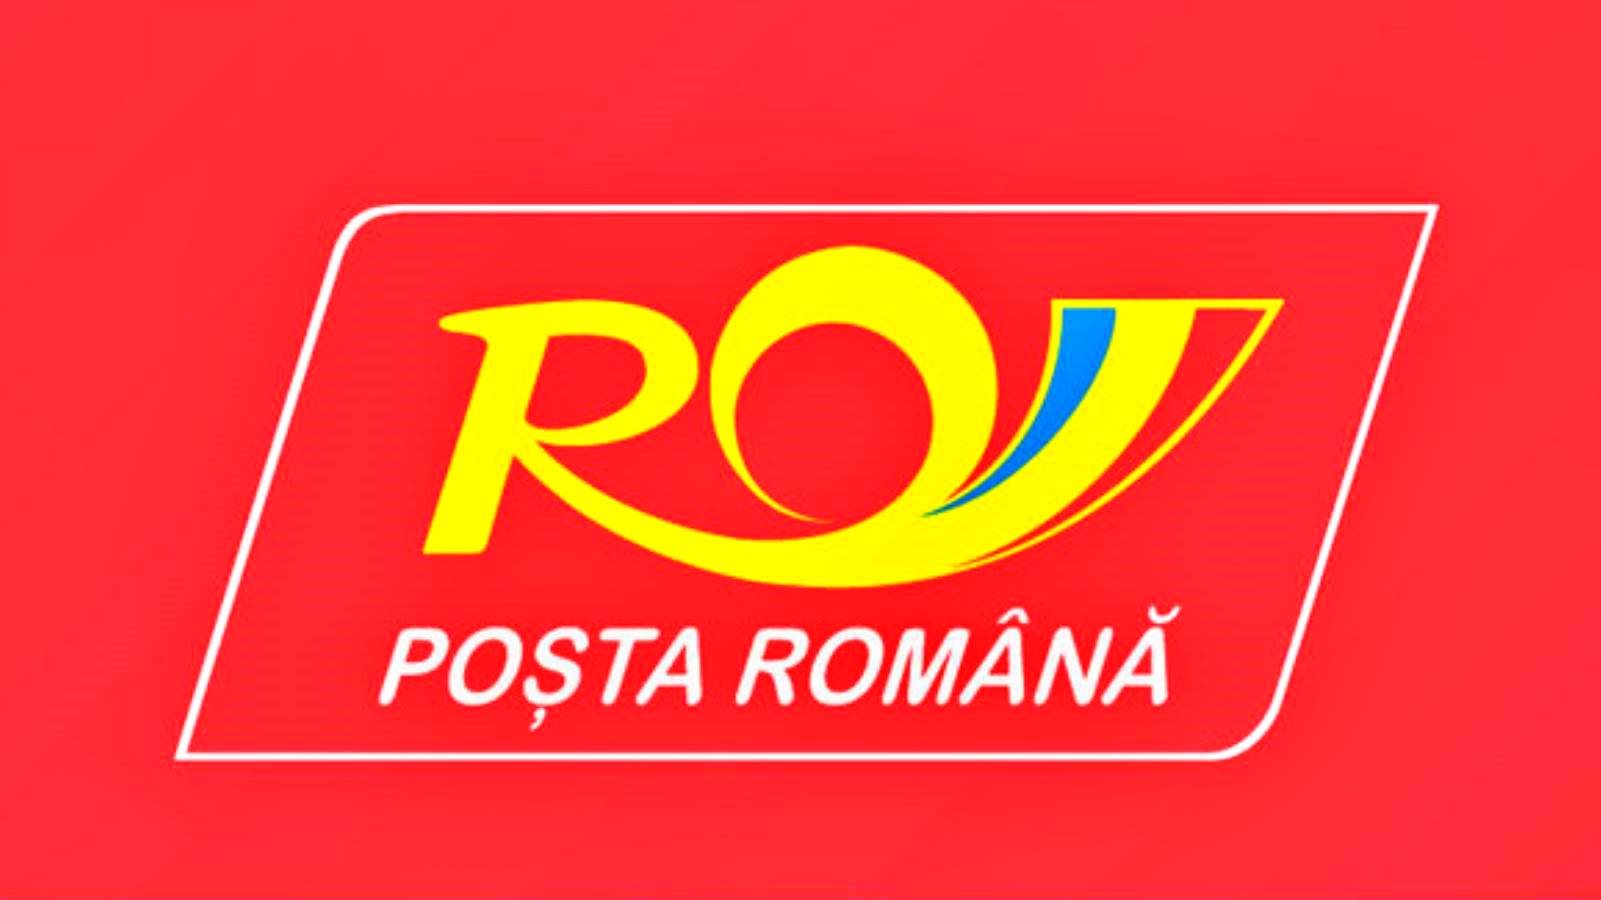 Oficjalny komunikat poczty rumuńskiej, który zaskoczył wielu Rumunów